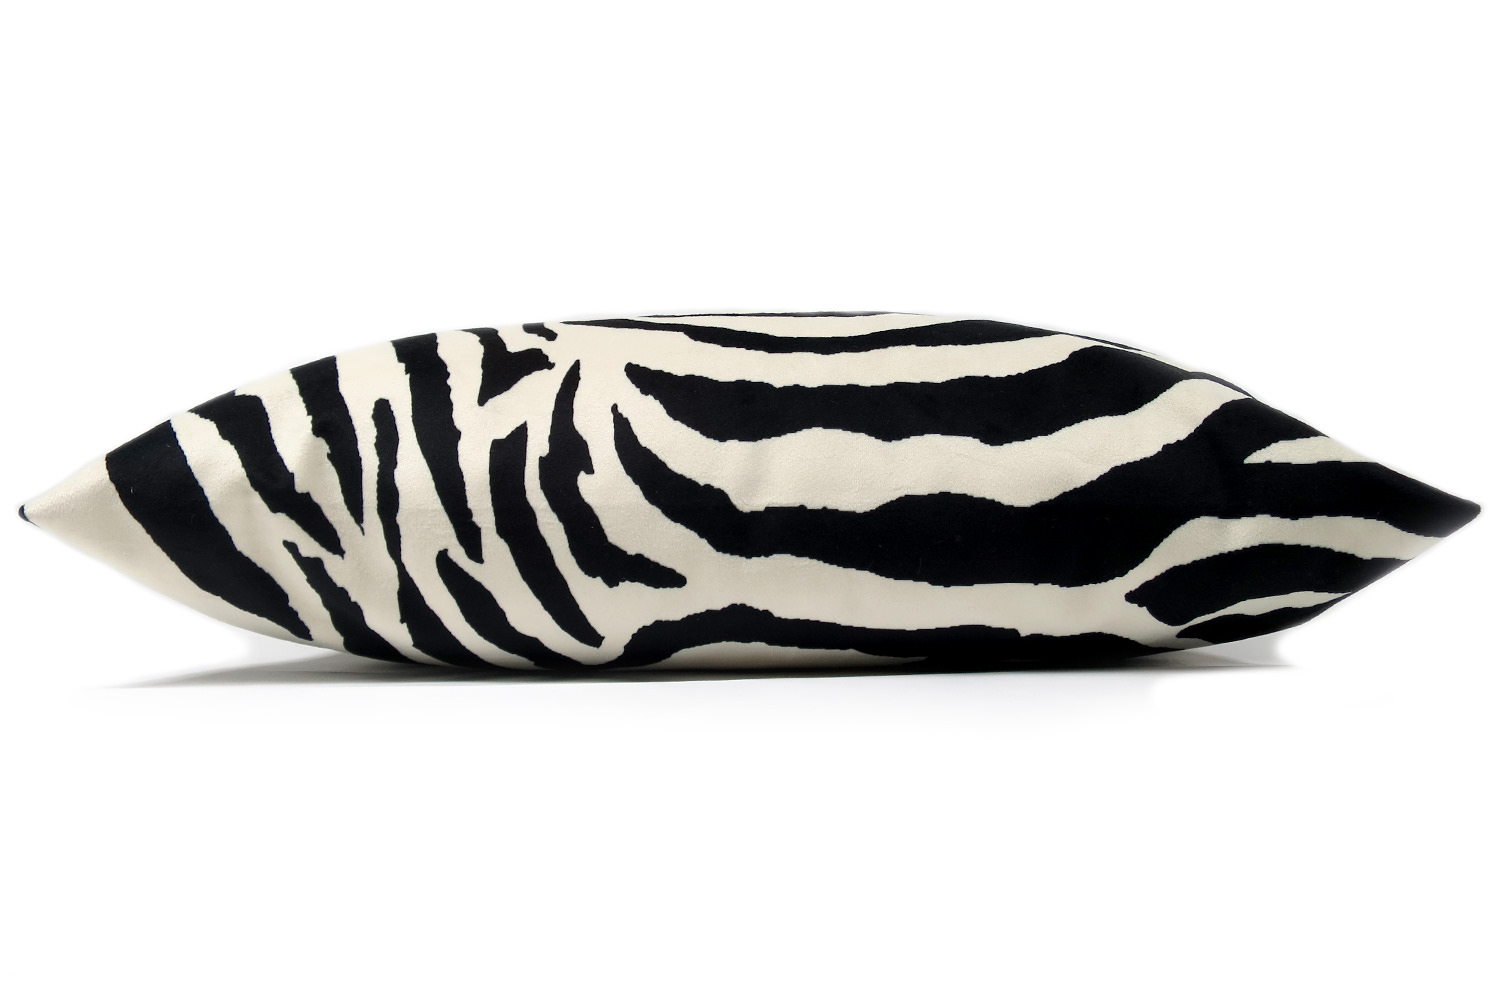 bw-zebras-5233